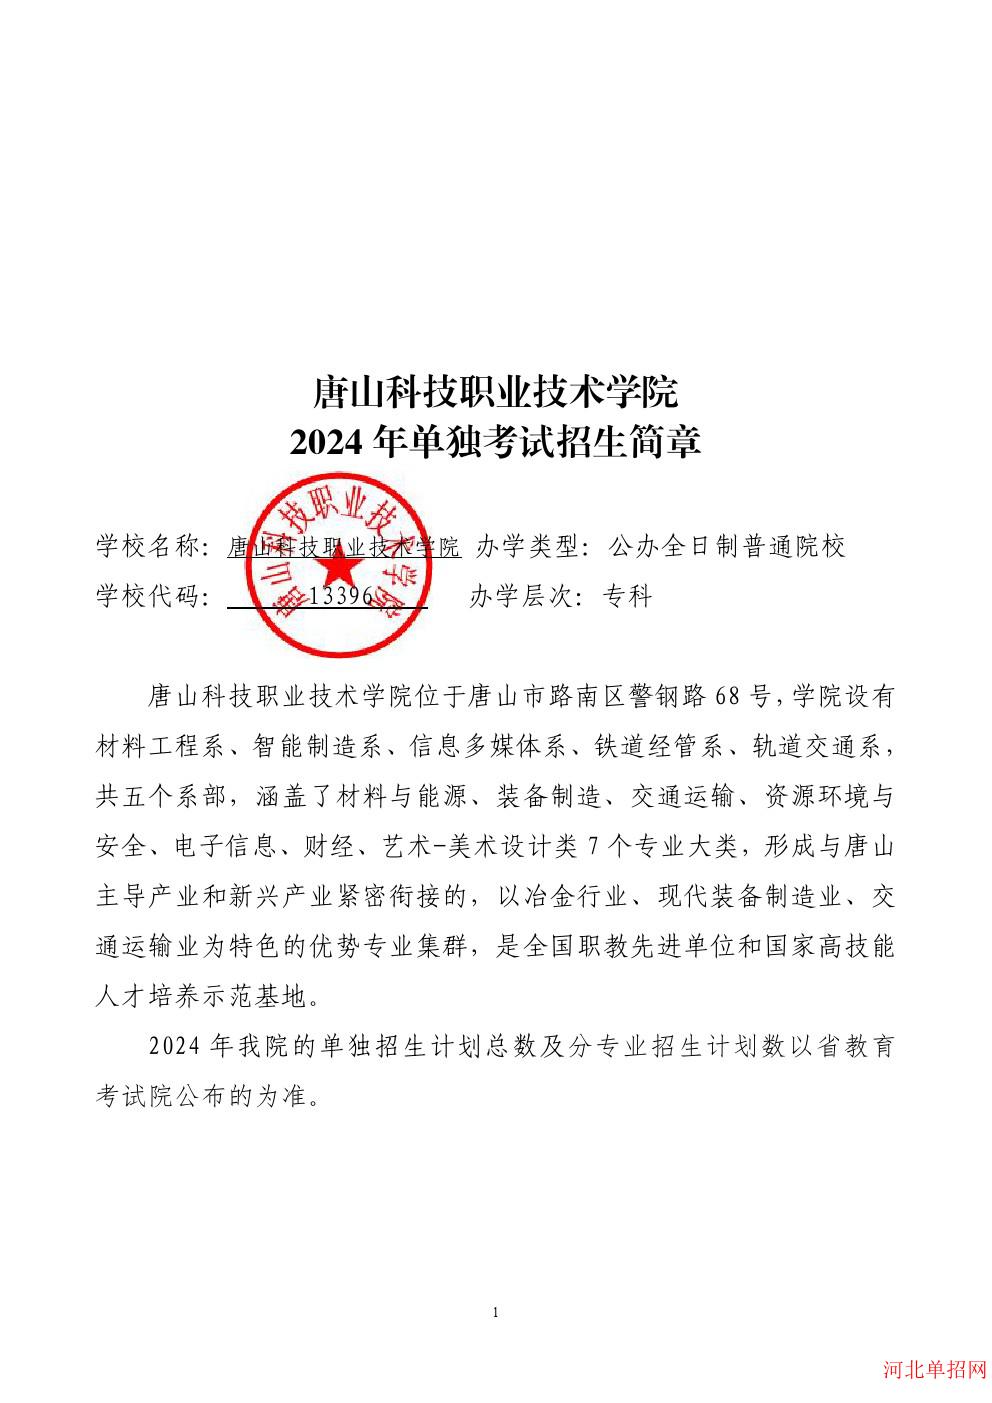 唐山科技职业技术学院2024年单招招生简章 图2